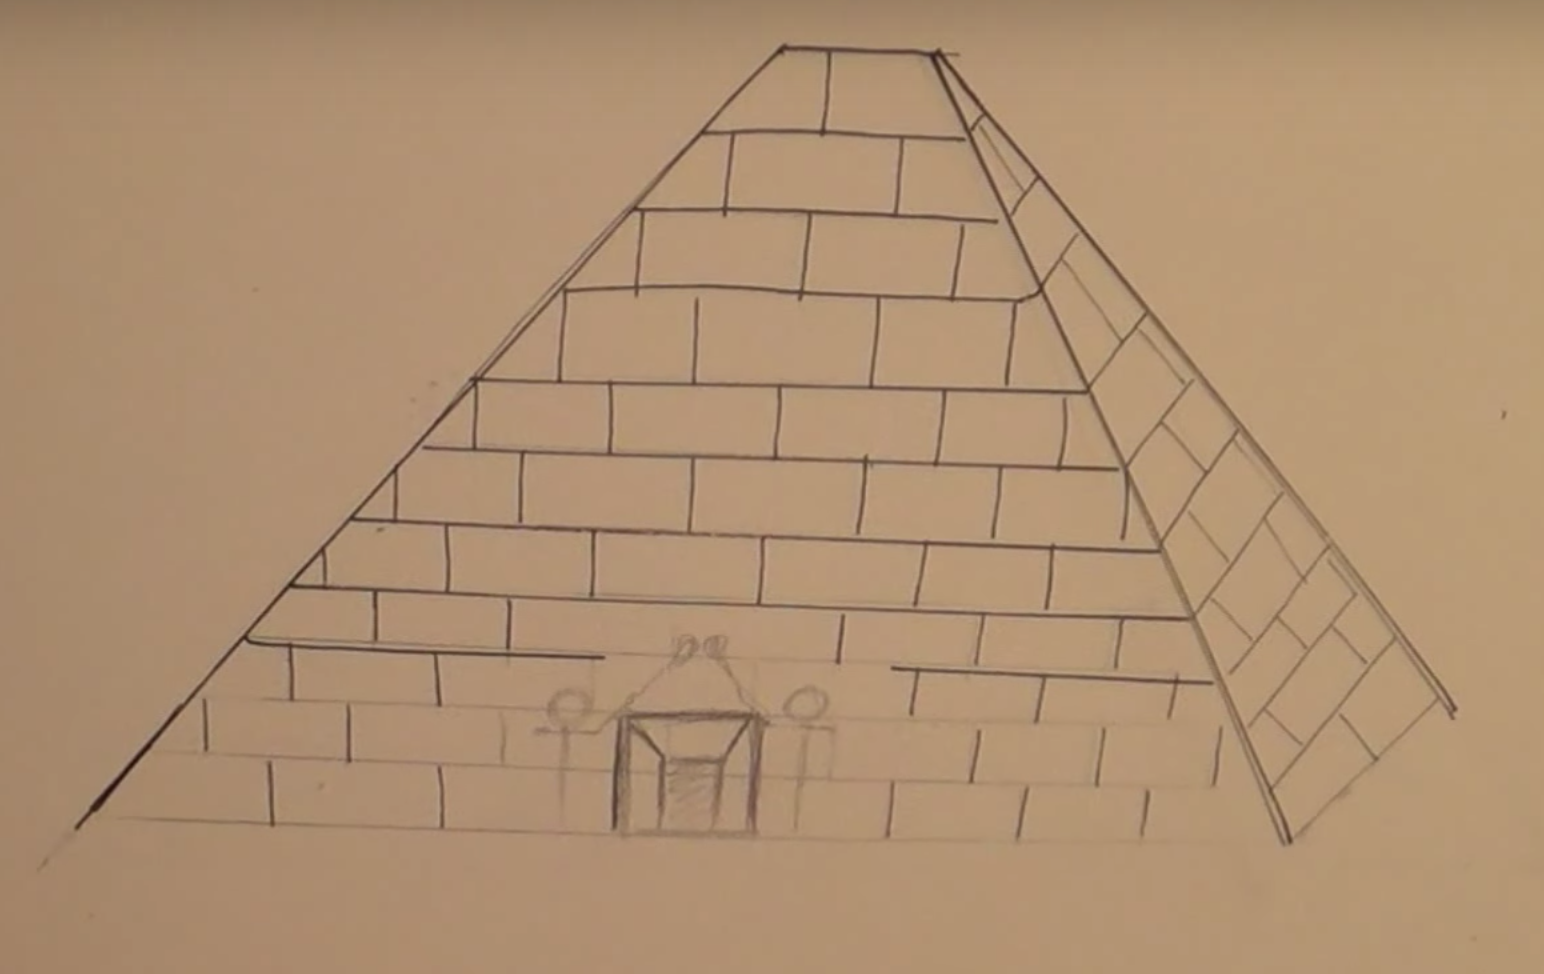 Как нарисовать пирамиды хеопса карандашом поэтапно